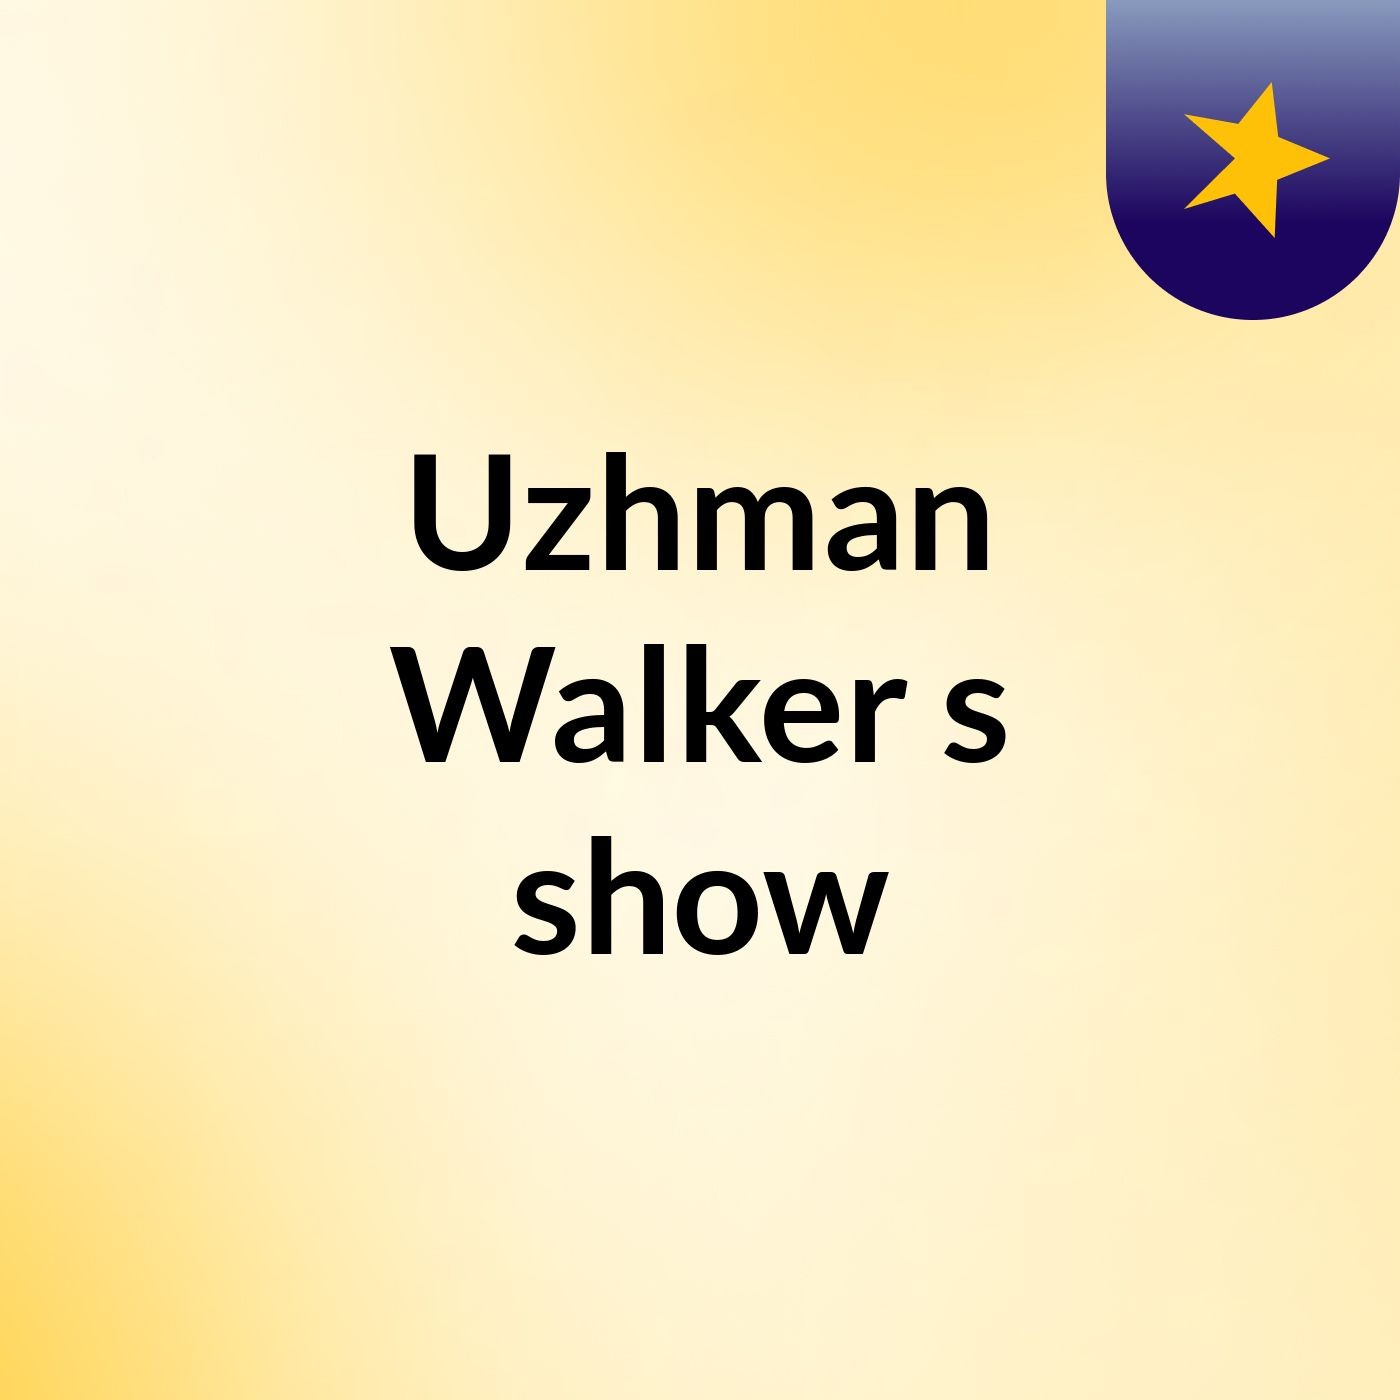 Uzhman Walker's show